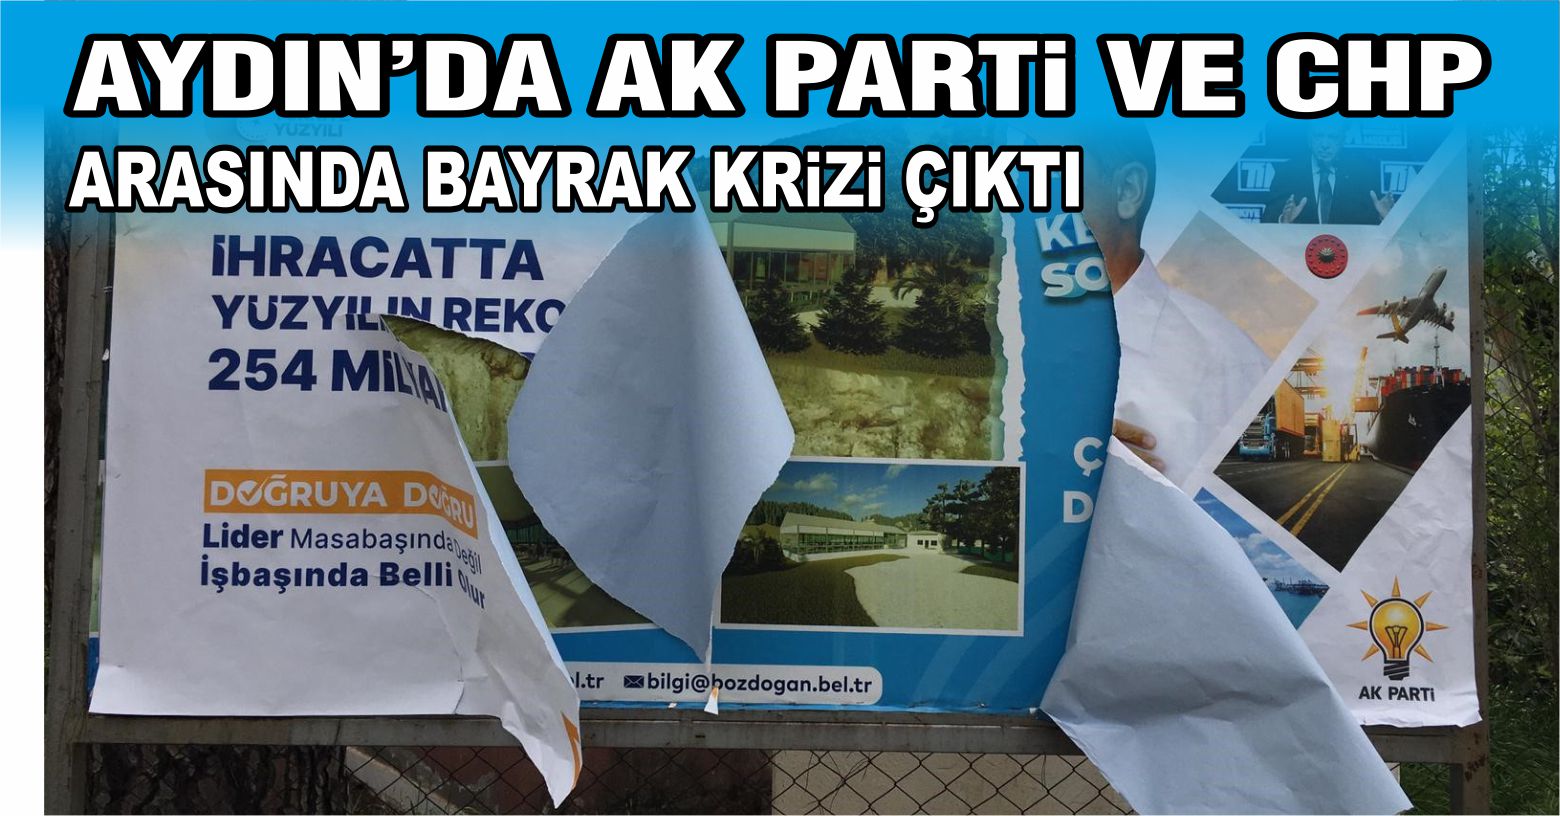 Aydın’da AK Parti ile CHP arasında afiş krizi